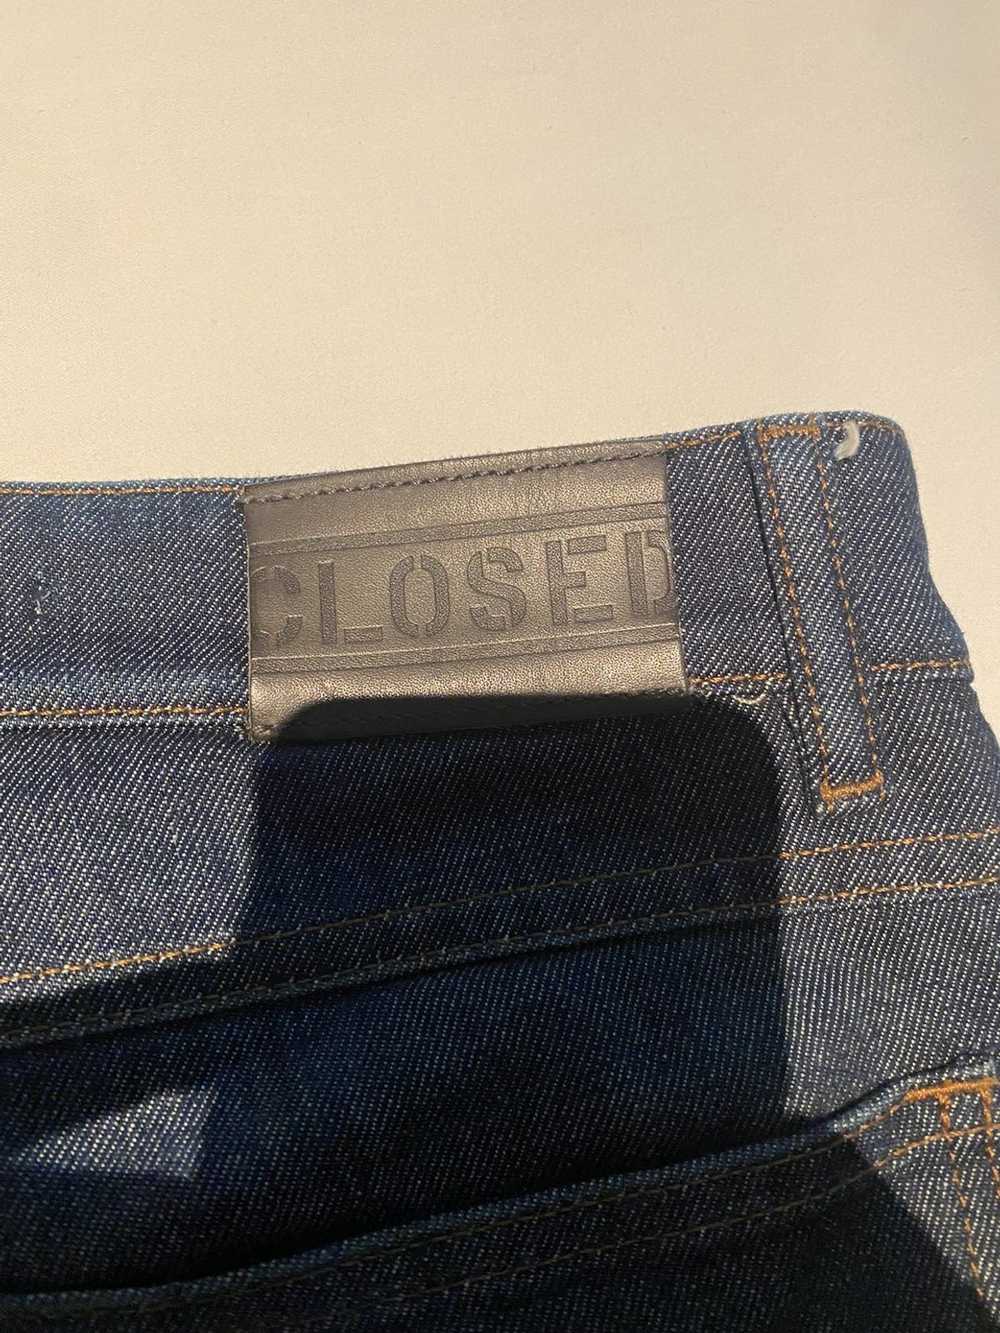 Closed Closed Black Denim Jeans - image 4